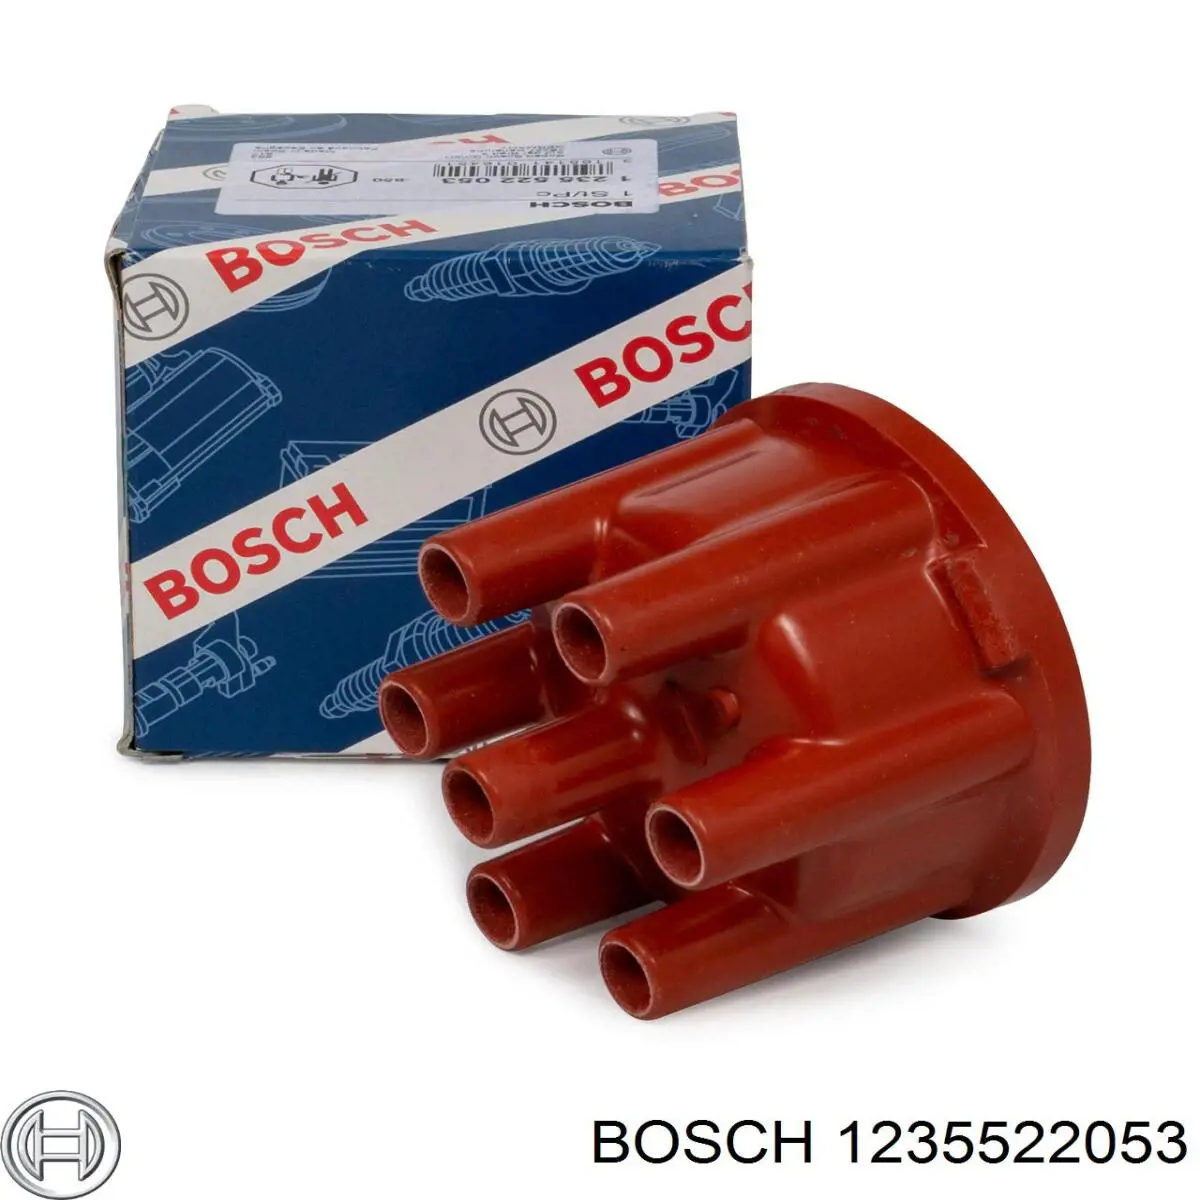 1235522053 Bosch tapa de distribuidor de encendido